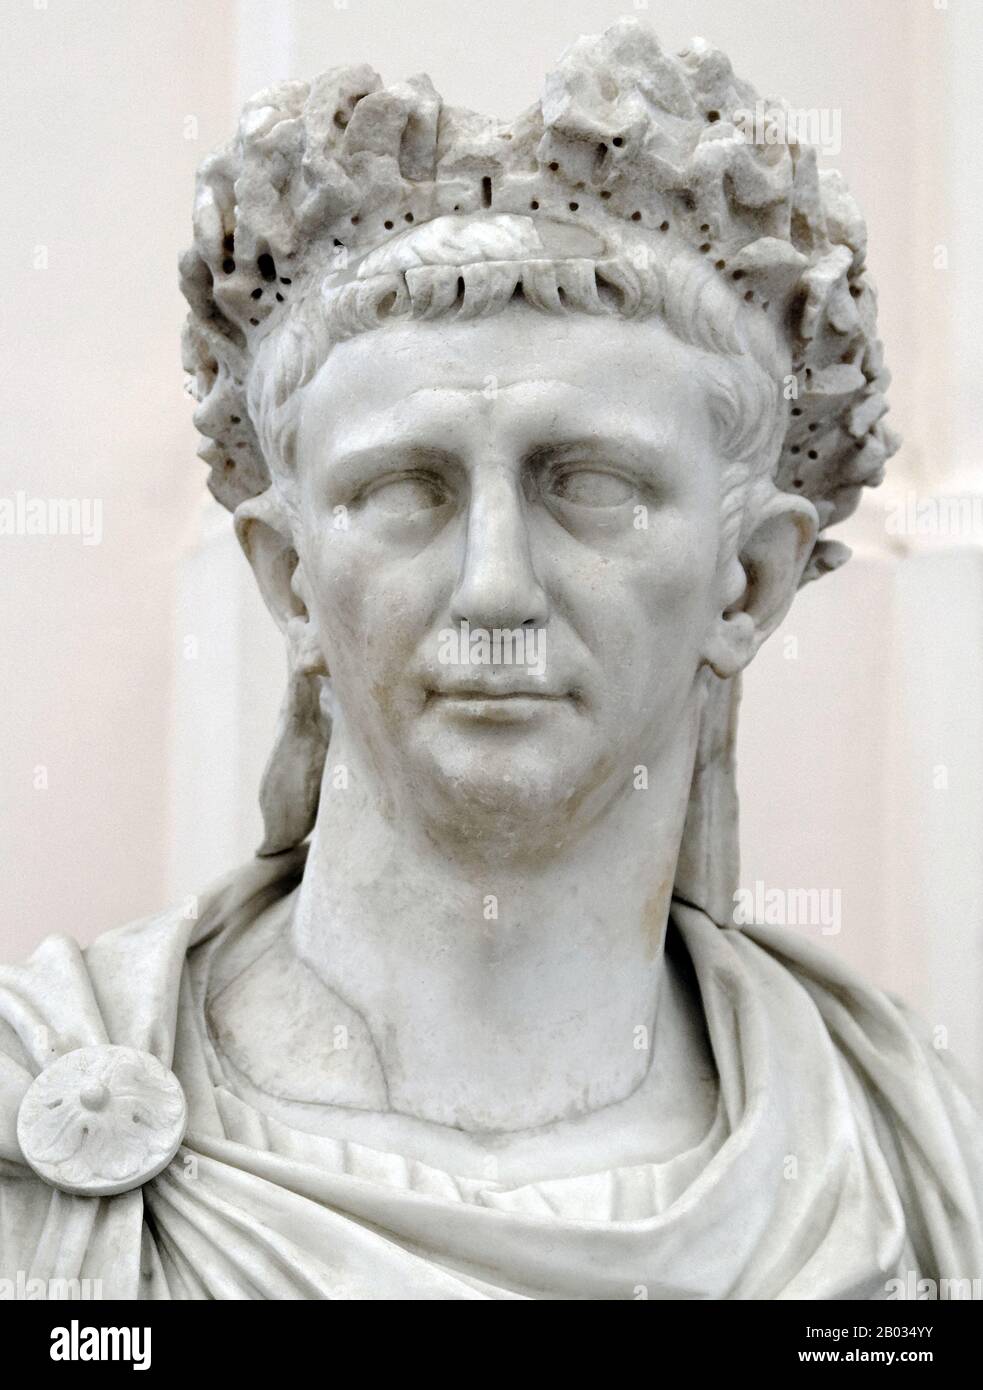 Claudio fu il primo imperatore romano ad essere nato fuori dall'Italia, e fu ostracizzato ed esentato dall'ufficio pubblico per gran parte della sua vita a causa di una lieve sordità e di essere afflitto da un limp. Fu la sua infermità che lo salvò dalle nobili purge che si verificarono durante i regni di Tiberio e Caligula, non essendo visto come una grave minaccia. Essendo l'ultimo uomo sopravvissuto della famiglia Julio-Claudian, Claudio fu dichiarato imperatore dalla Guardia Pretoriana dopo il loro assassinio di Caligula. Nonostante la sua unica esperienza precedente di condividere un consolato con suo nipote CA Foto Stock